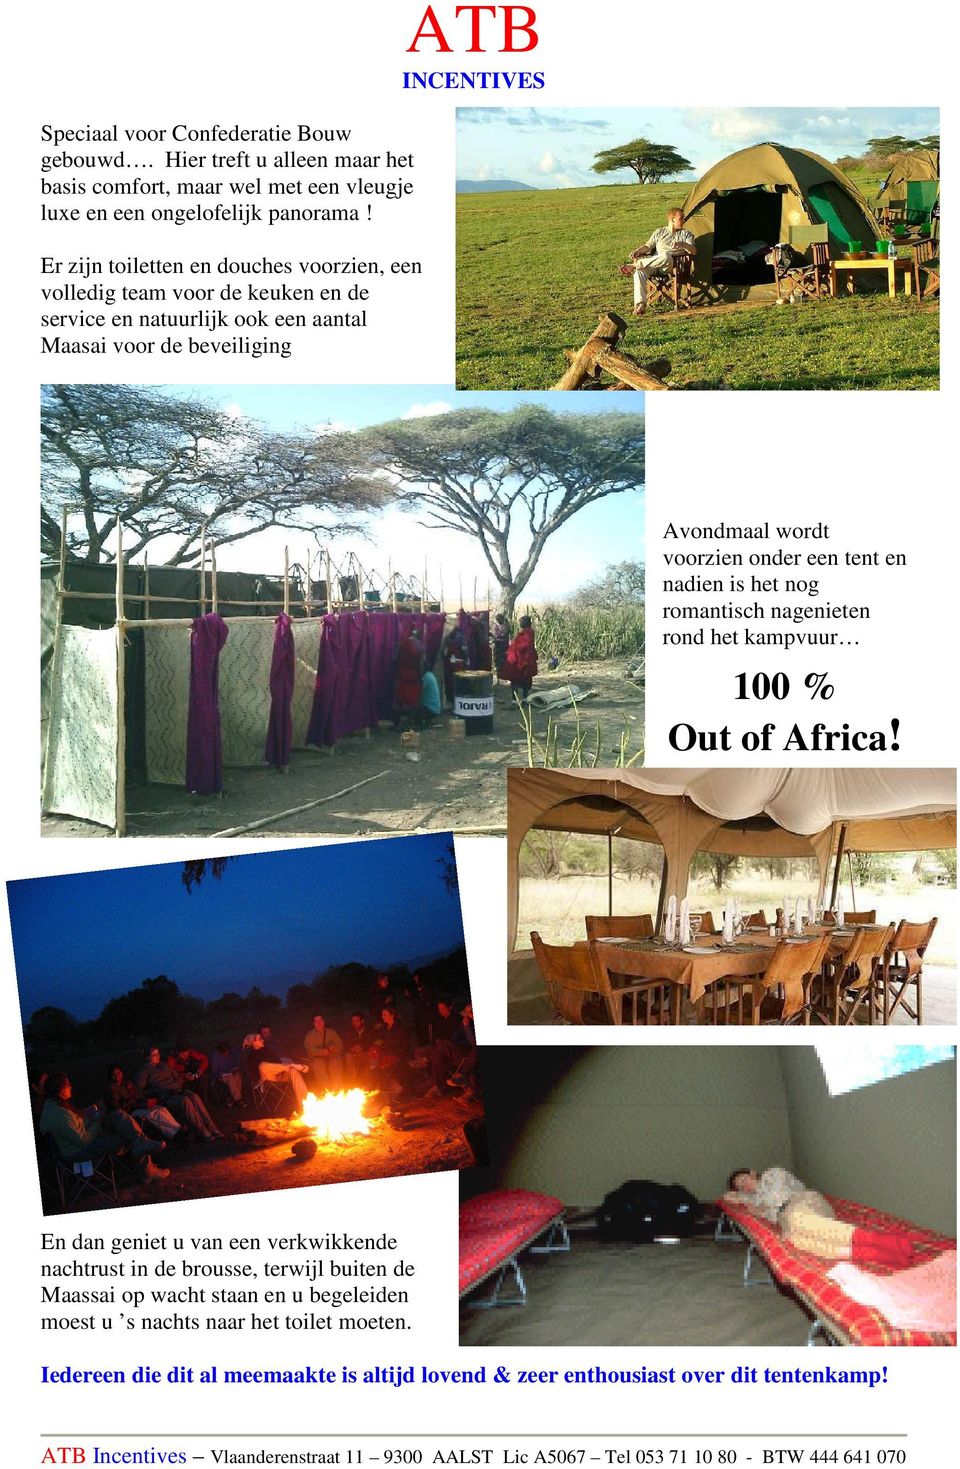 voorzien onder een tent en nadien is het nog romantisch nagenieten rond het kampvuur 100 % Out of Africa!